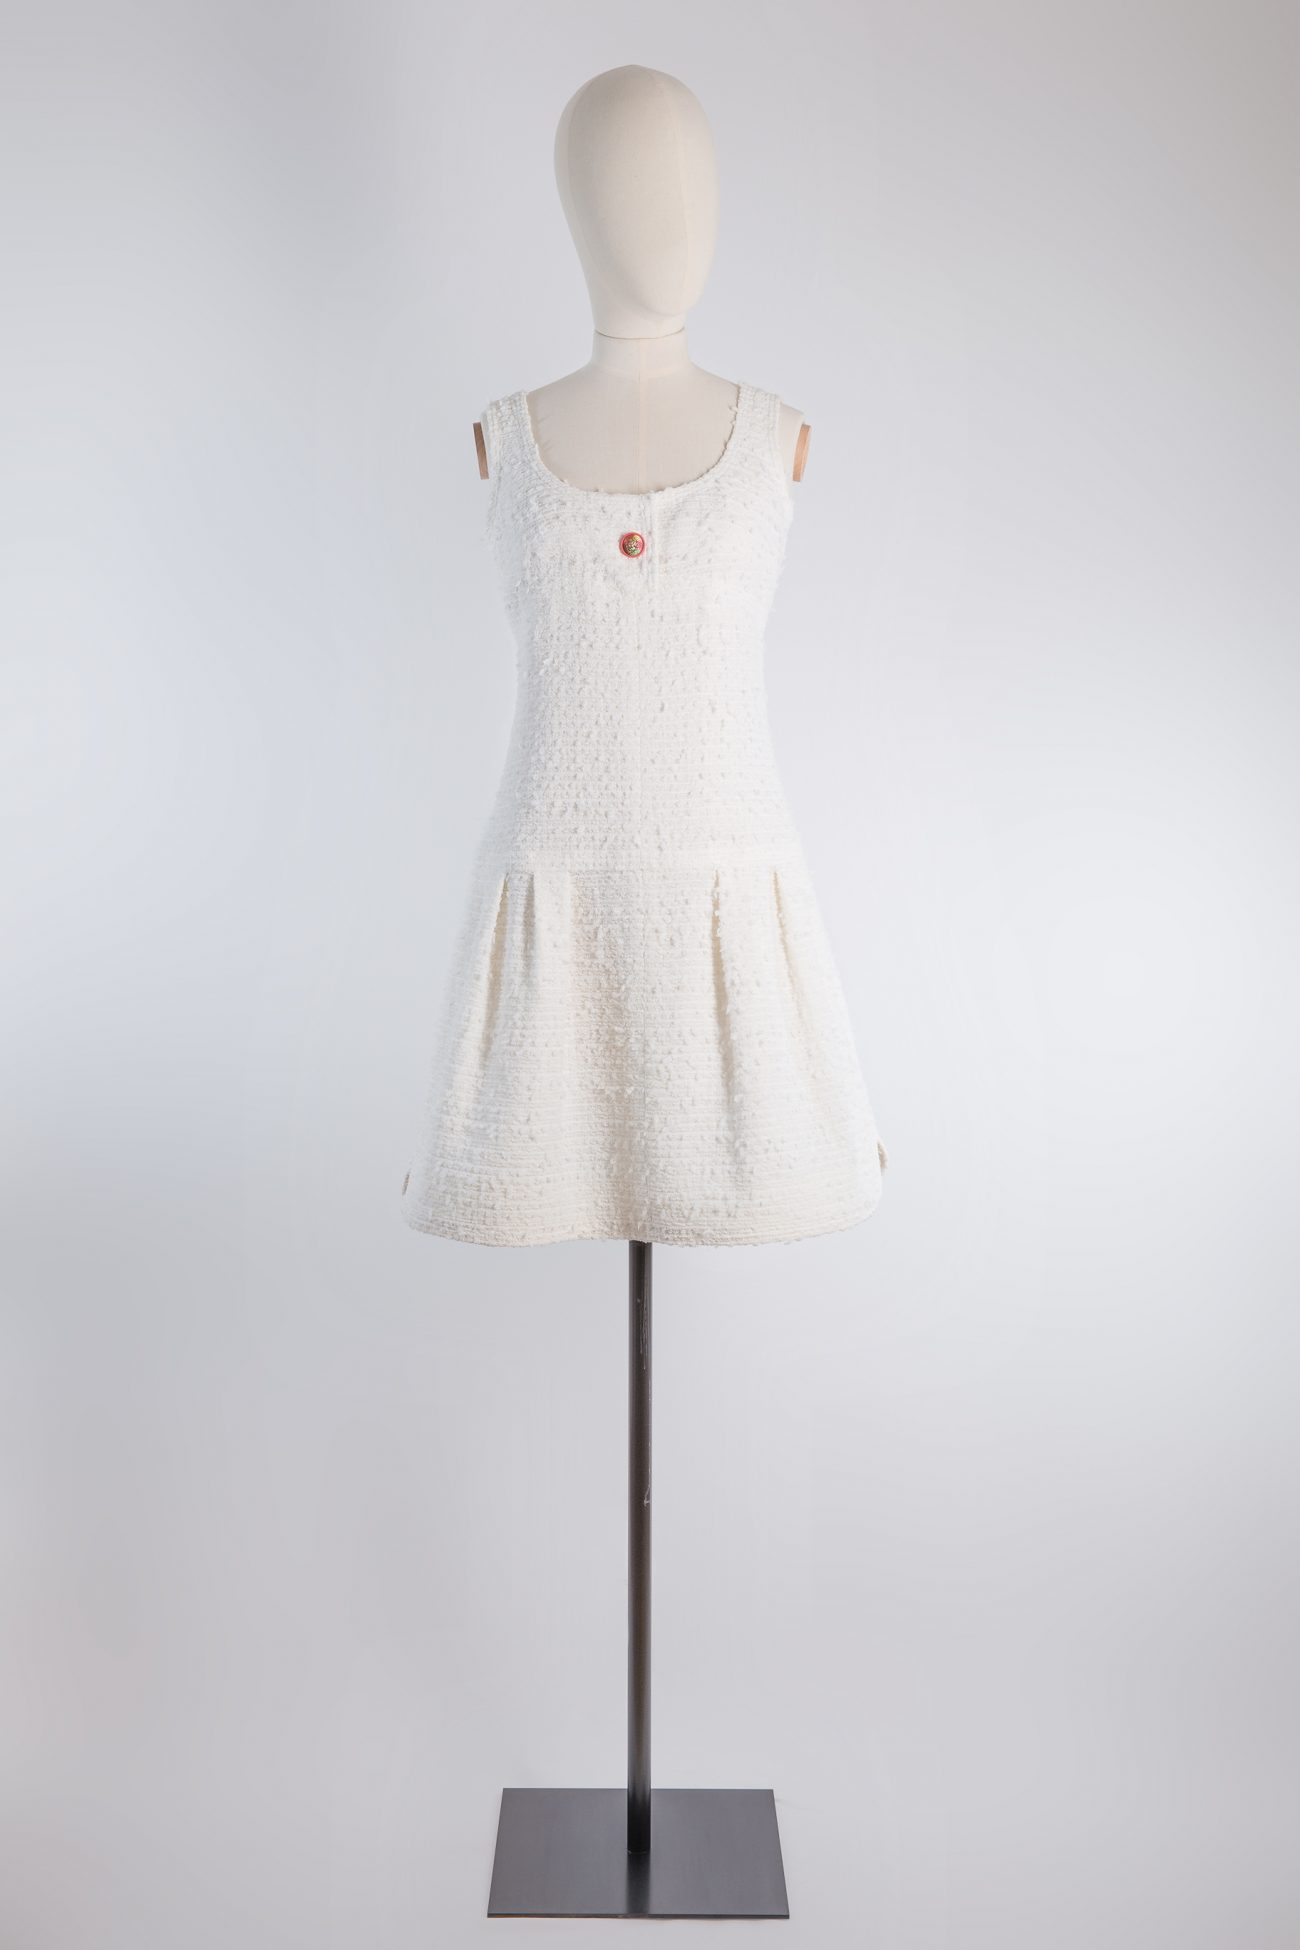 CHANEL Mini Dresses for Women - Poshmark